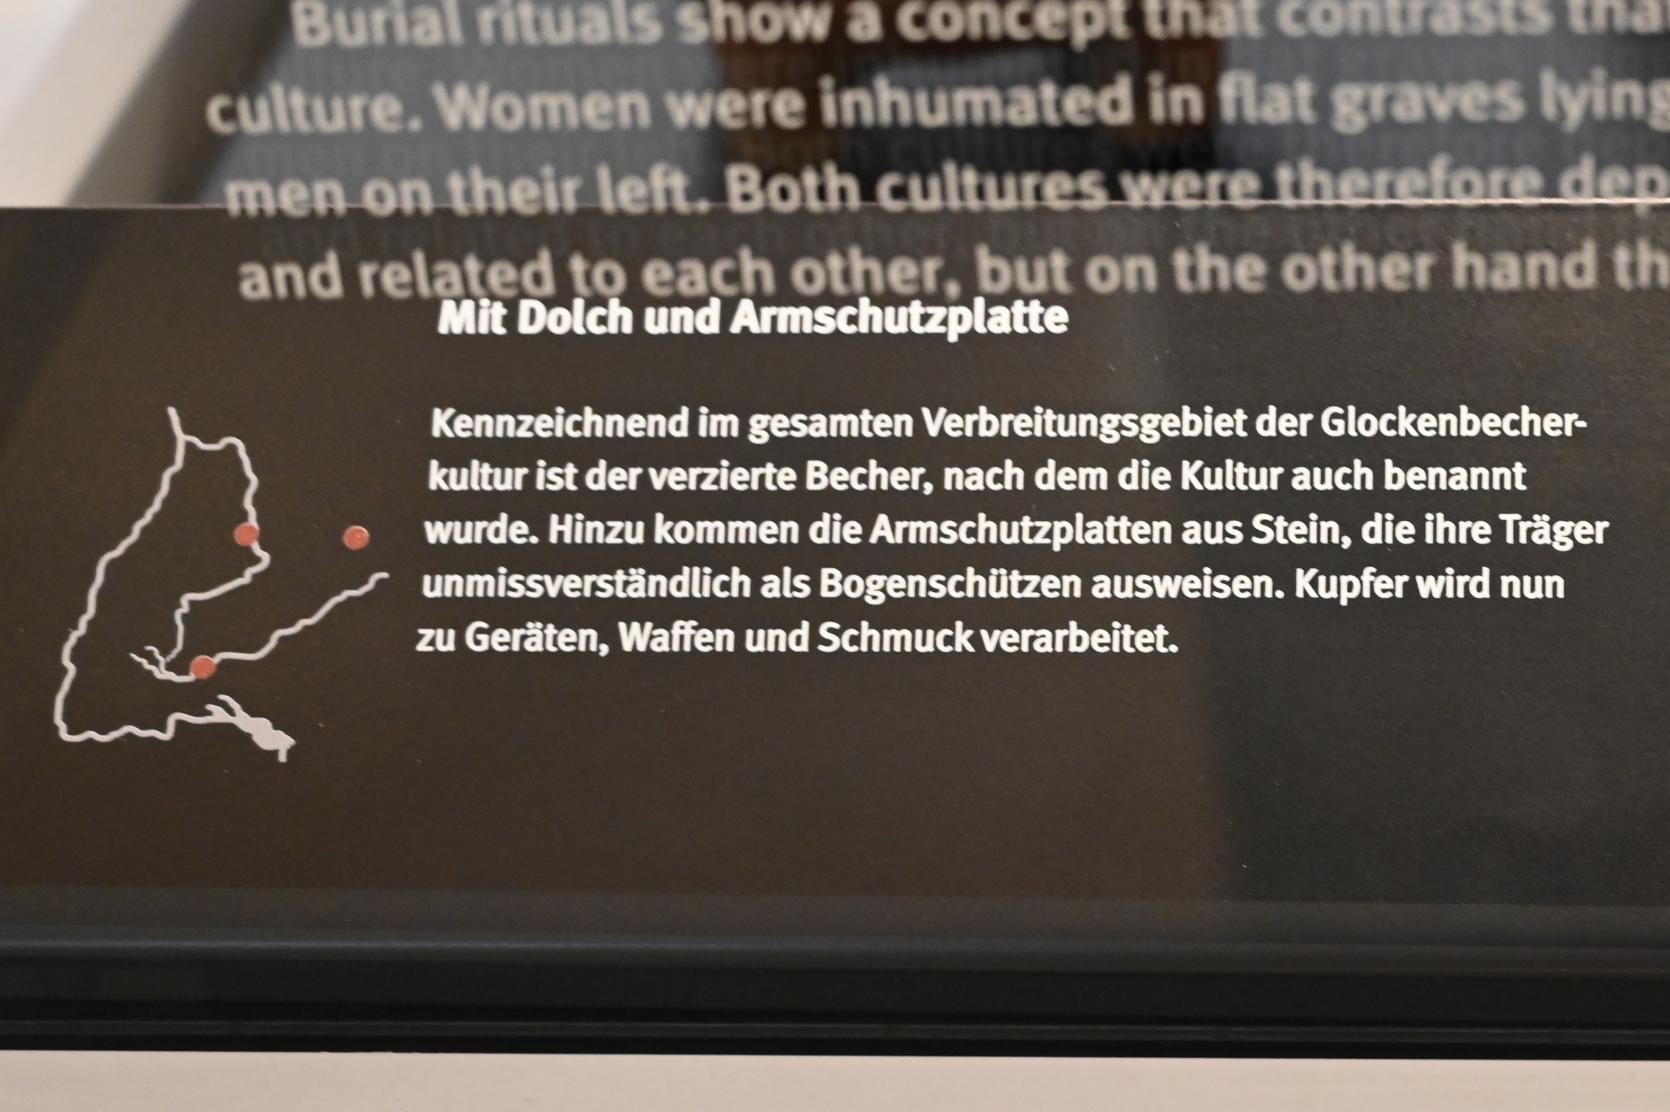 Armschutzplatte, Neolithikum (Jungsteinzeit), 5500 - 1700 v. Chr., 2400 v. Chr., Bild 3/3